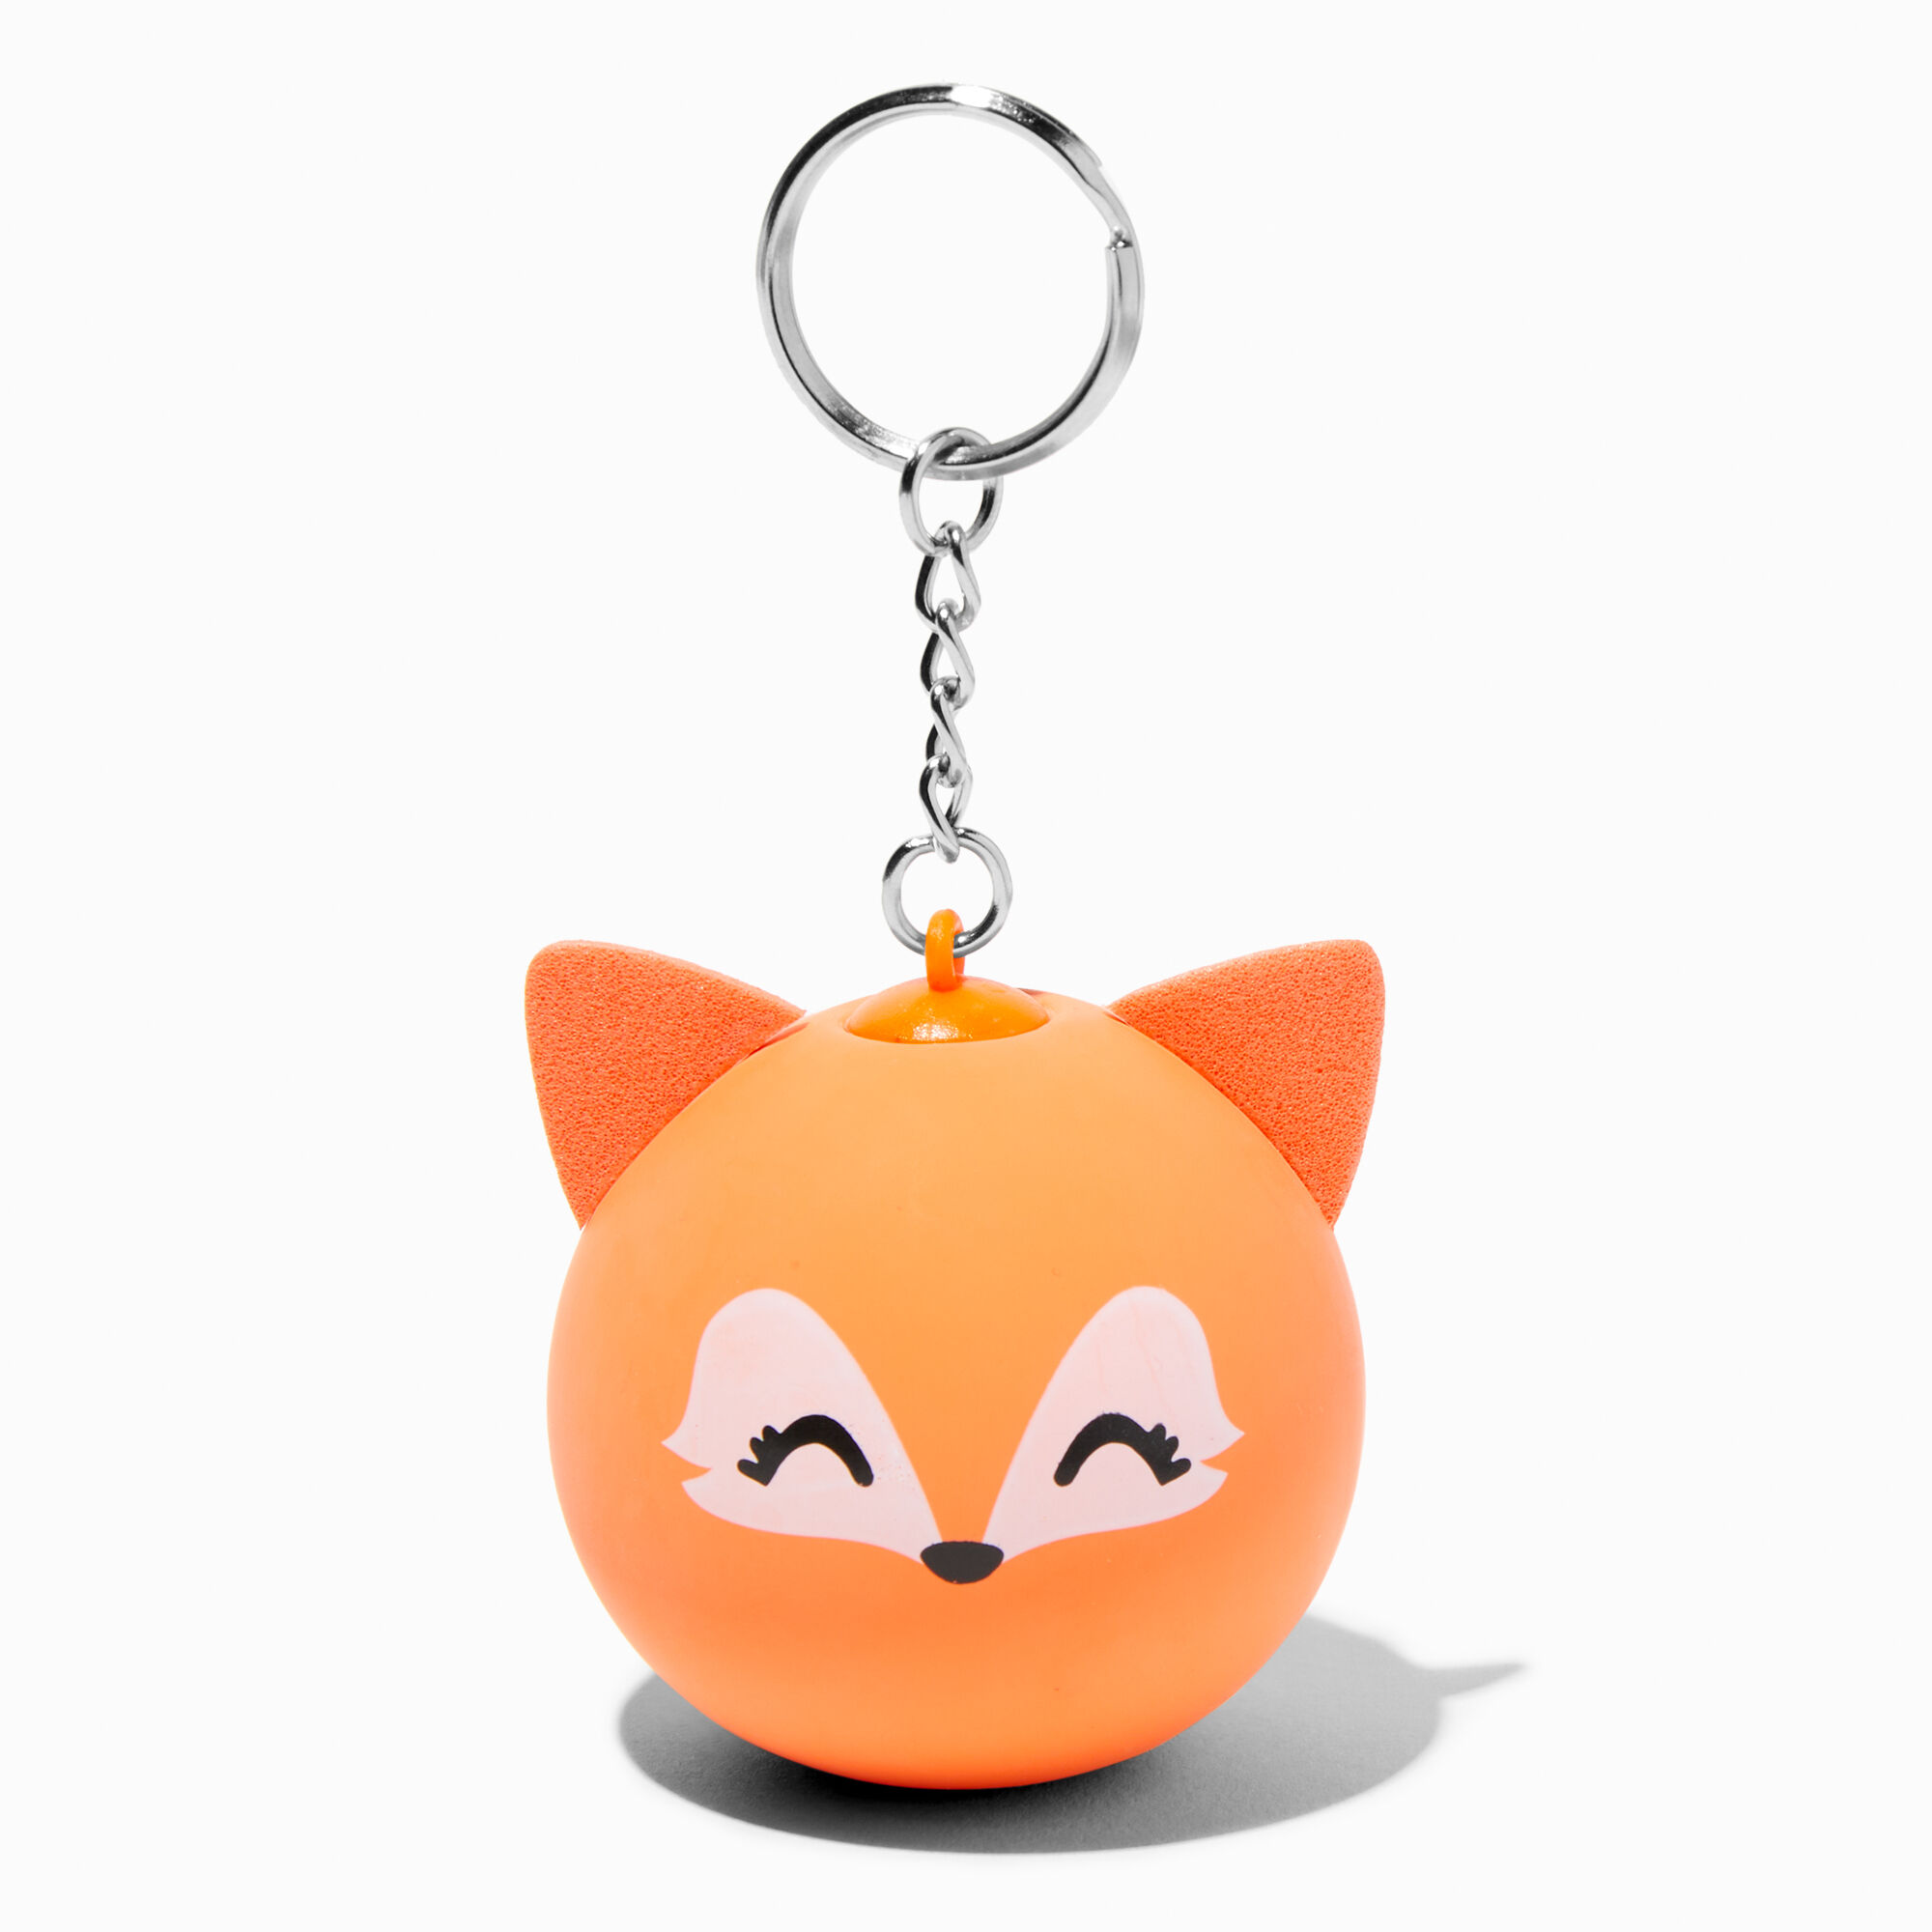 View Claires Fox Stress Ball Keychain Orange information